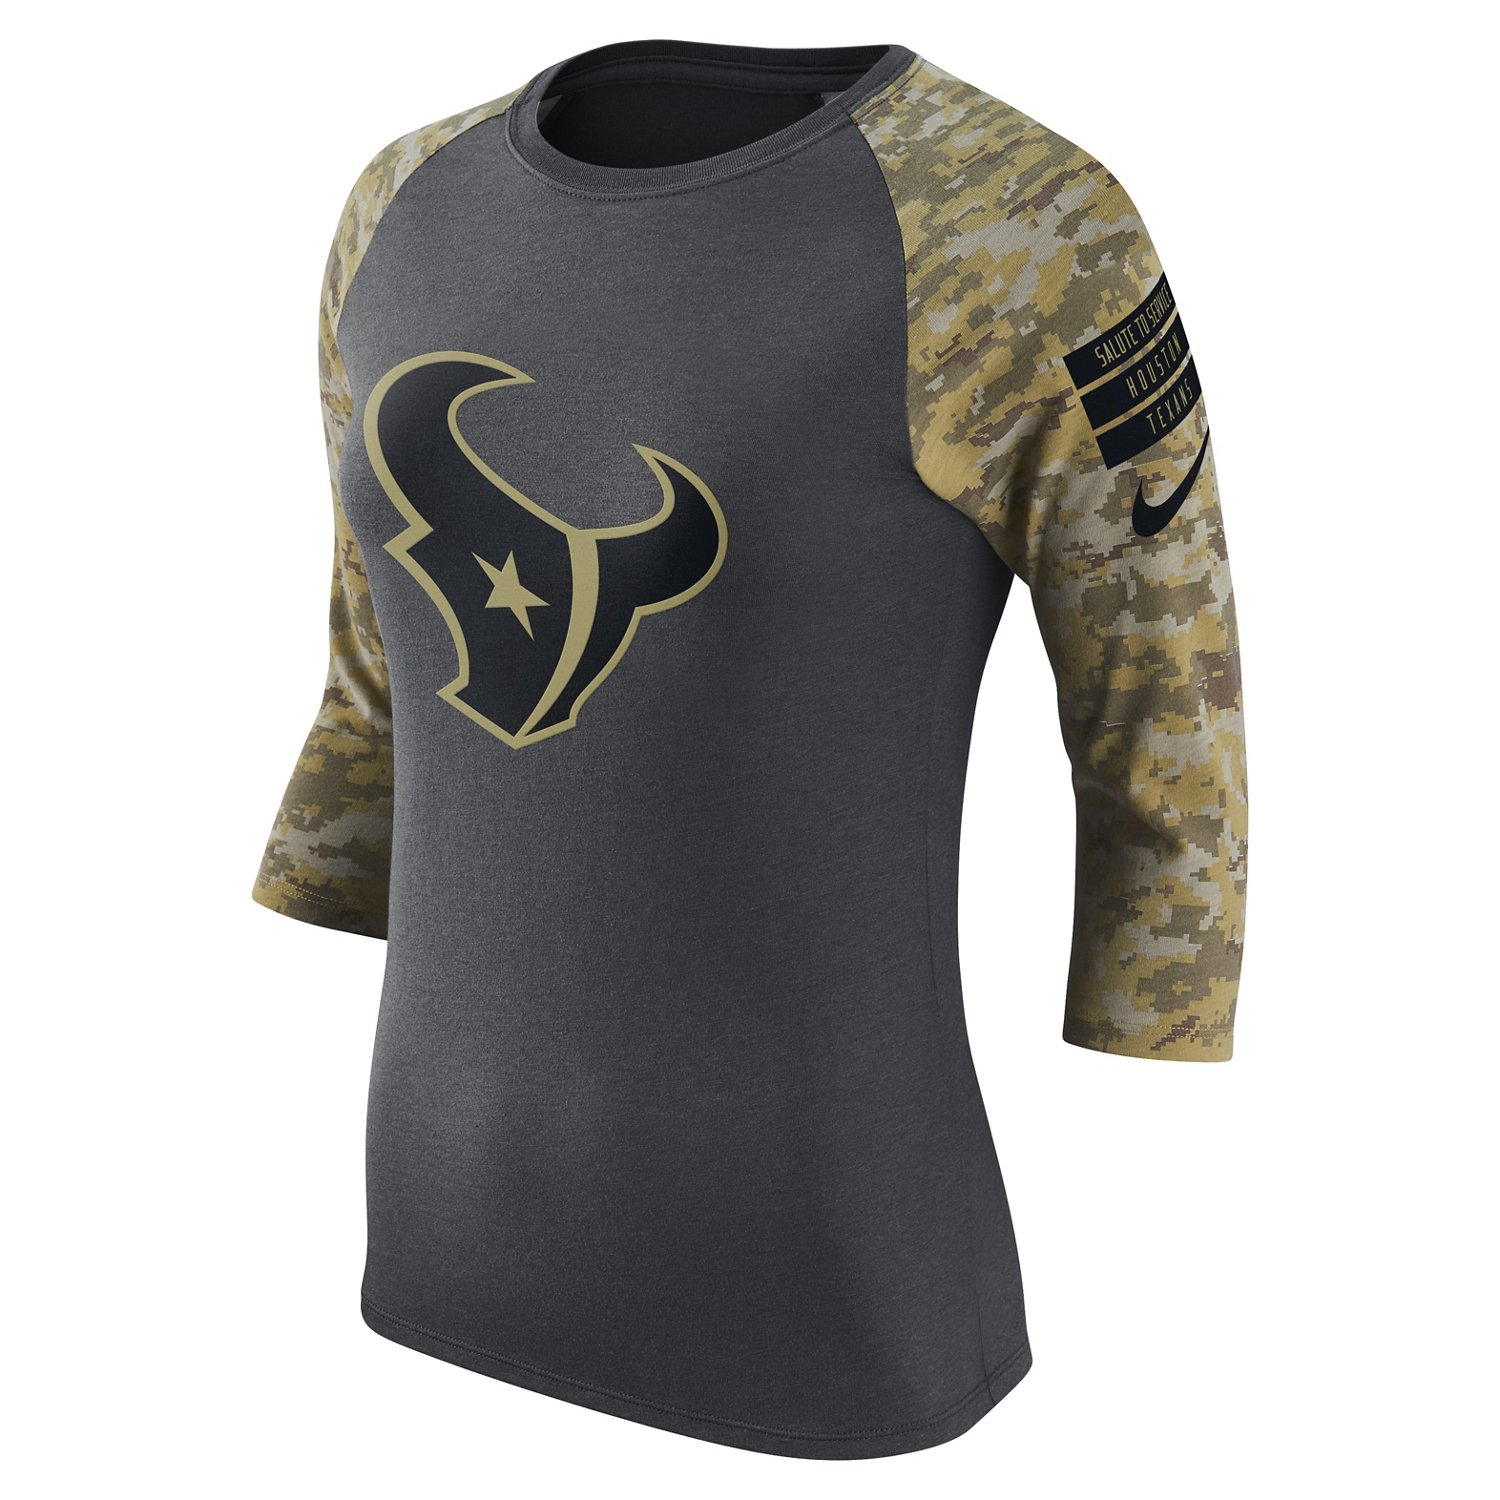 Houston Texans | Houston NFL Texans Gear: Jerseys, Apparel, Hats & more